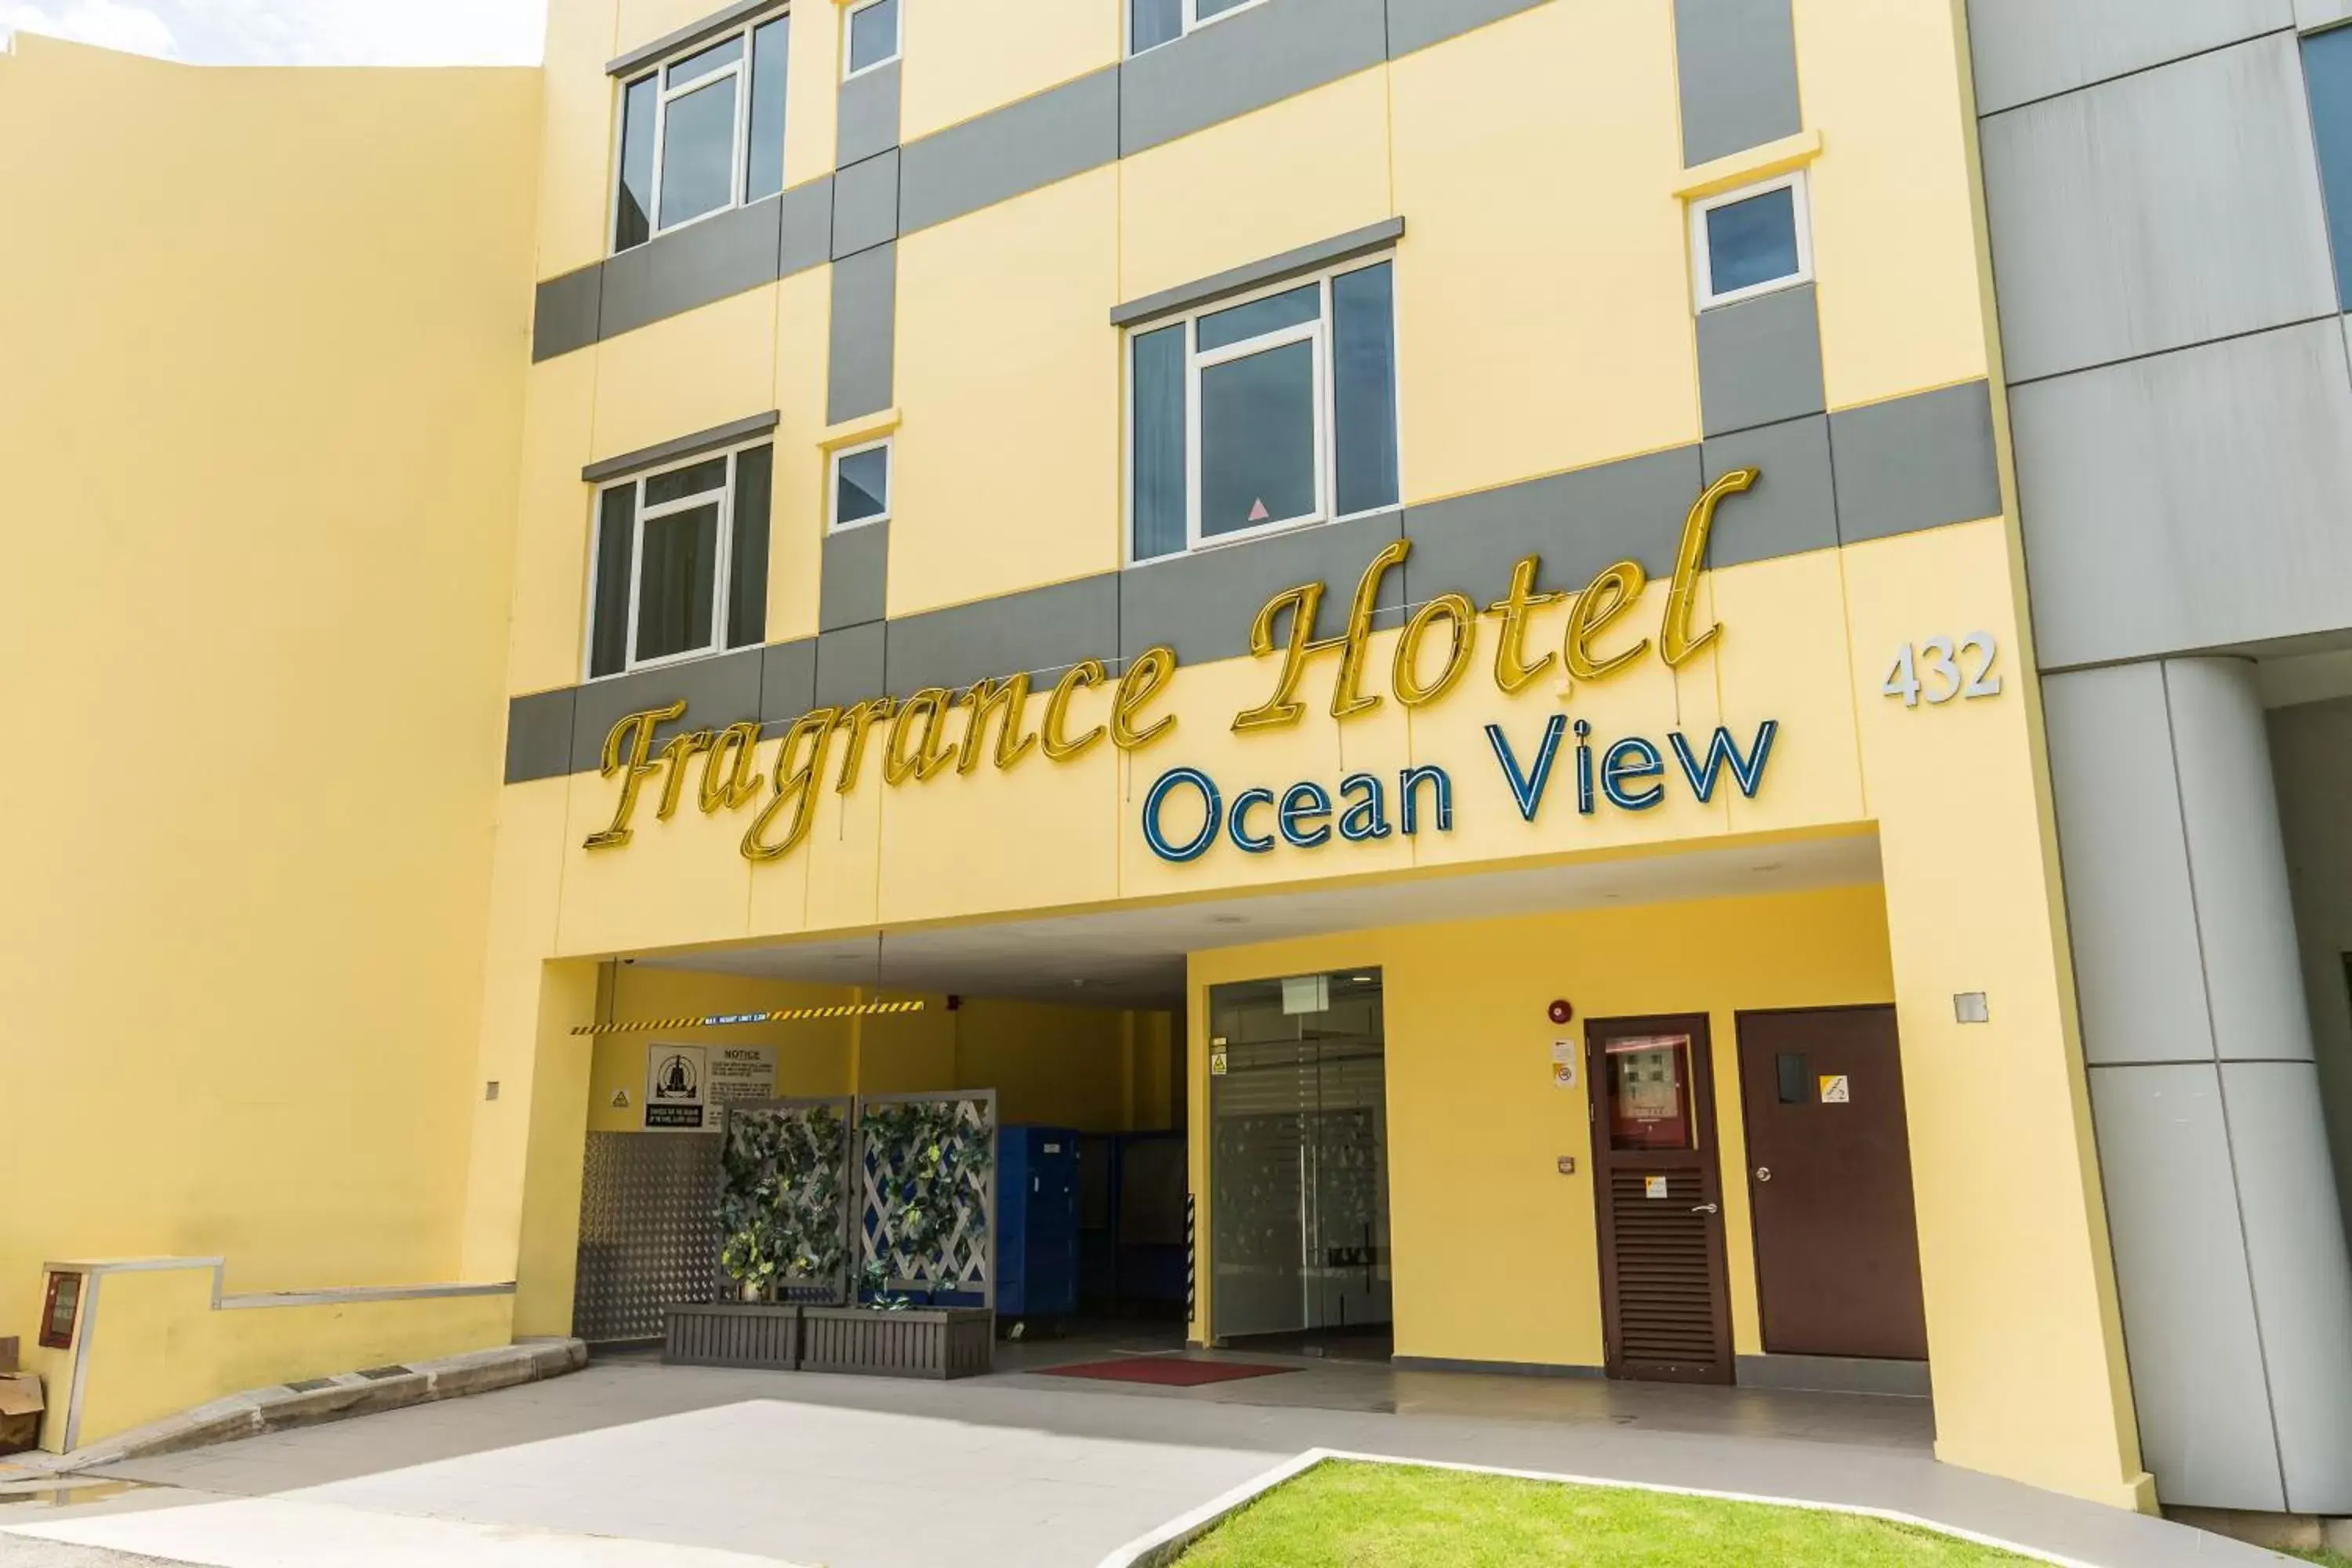 Facade/entrance in Fragrance Hotel - Ocean View